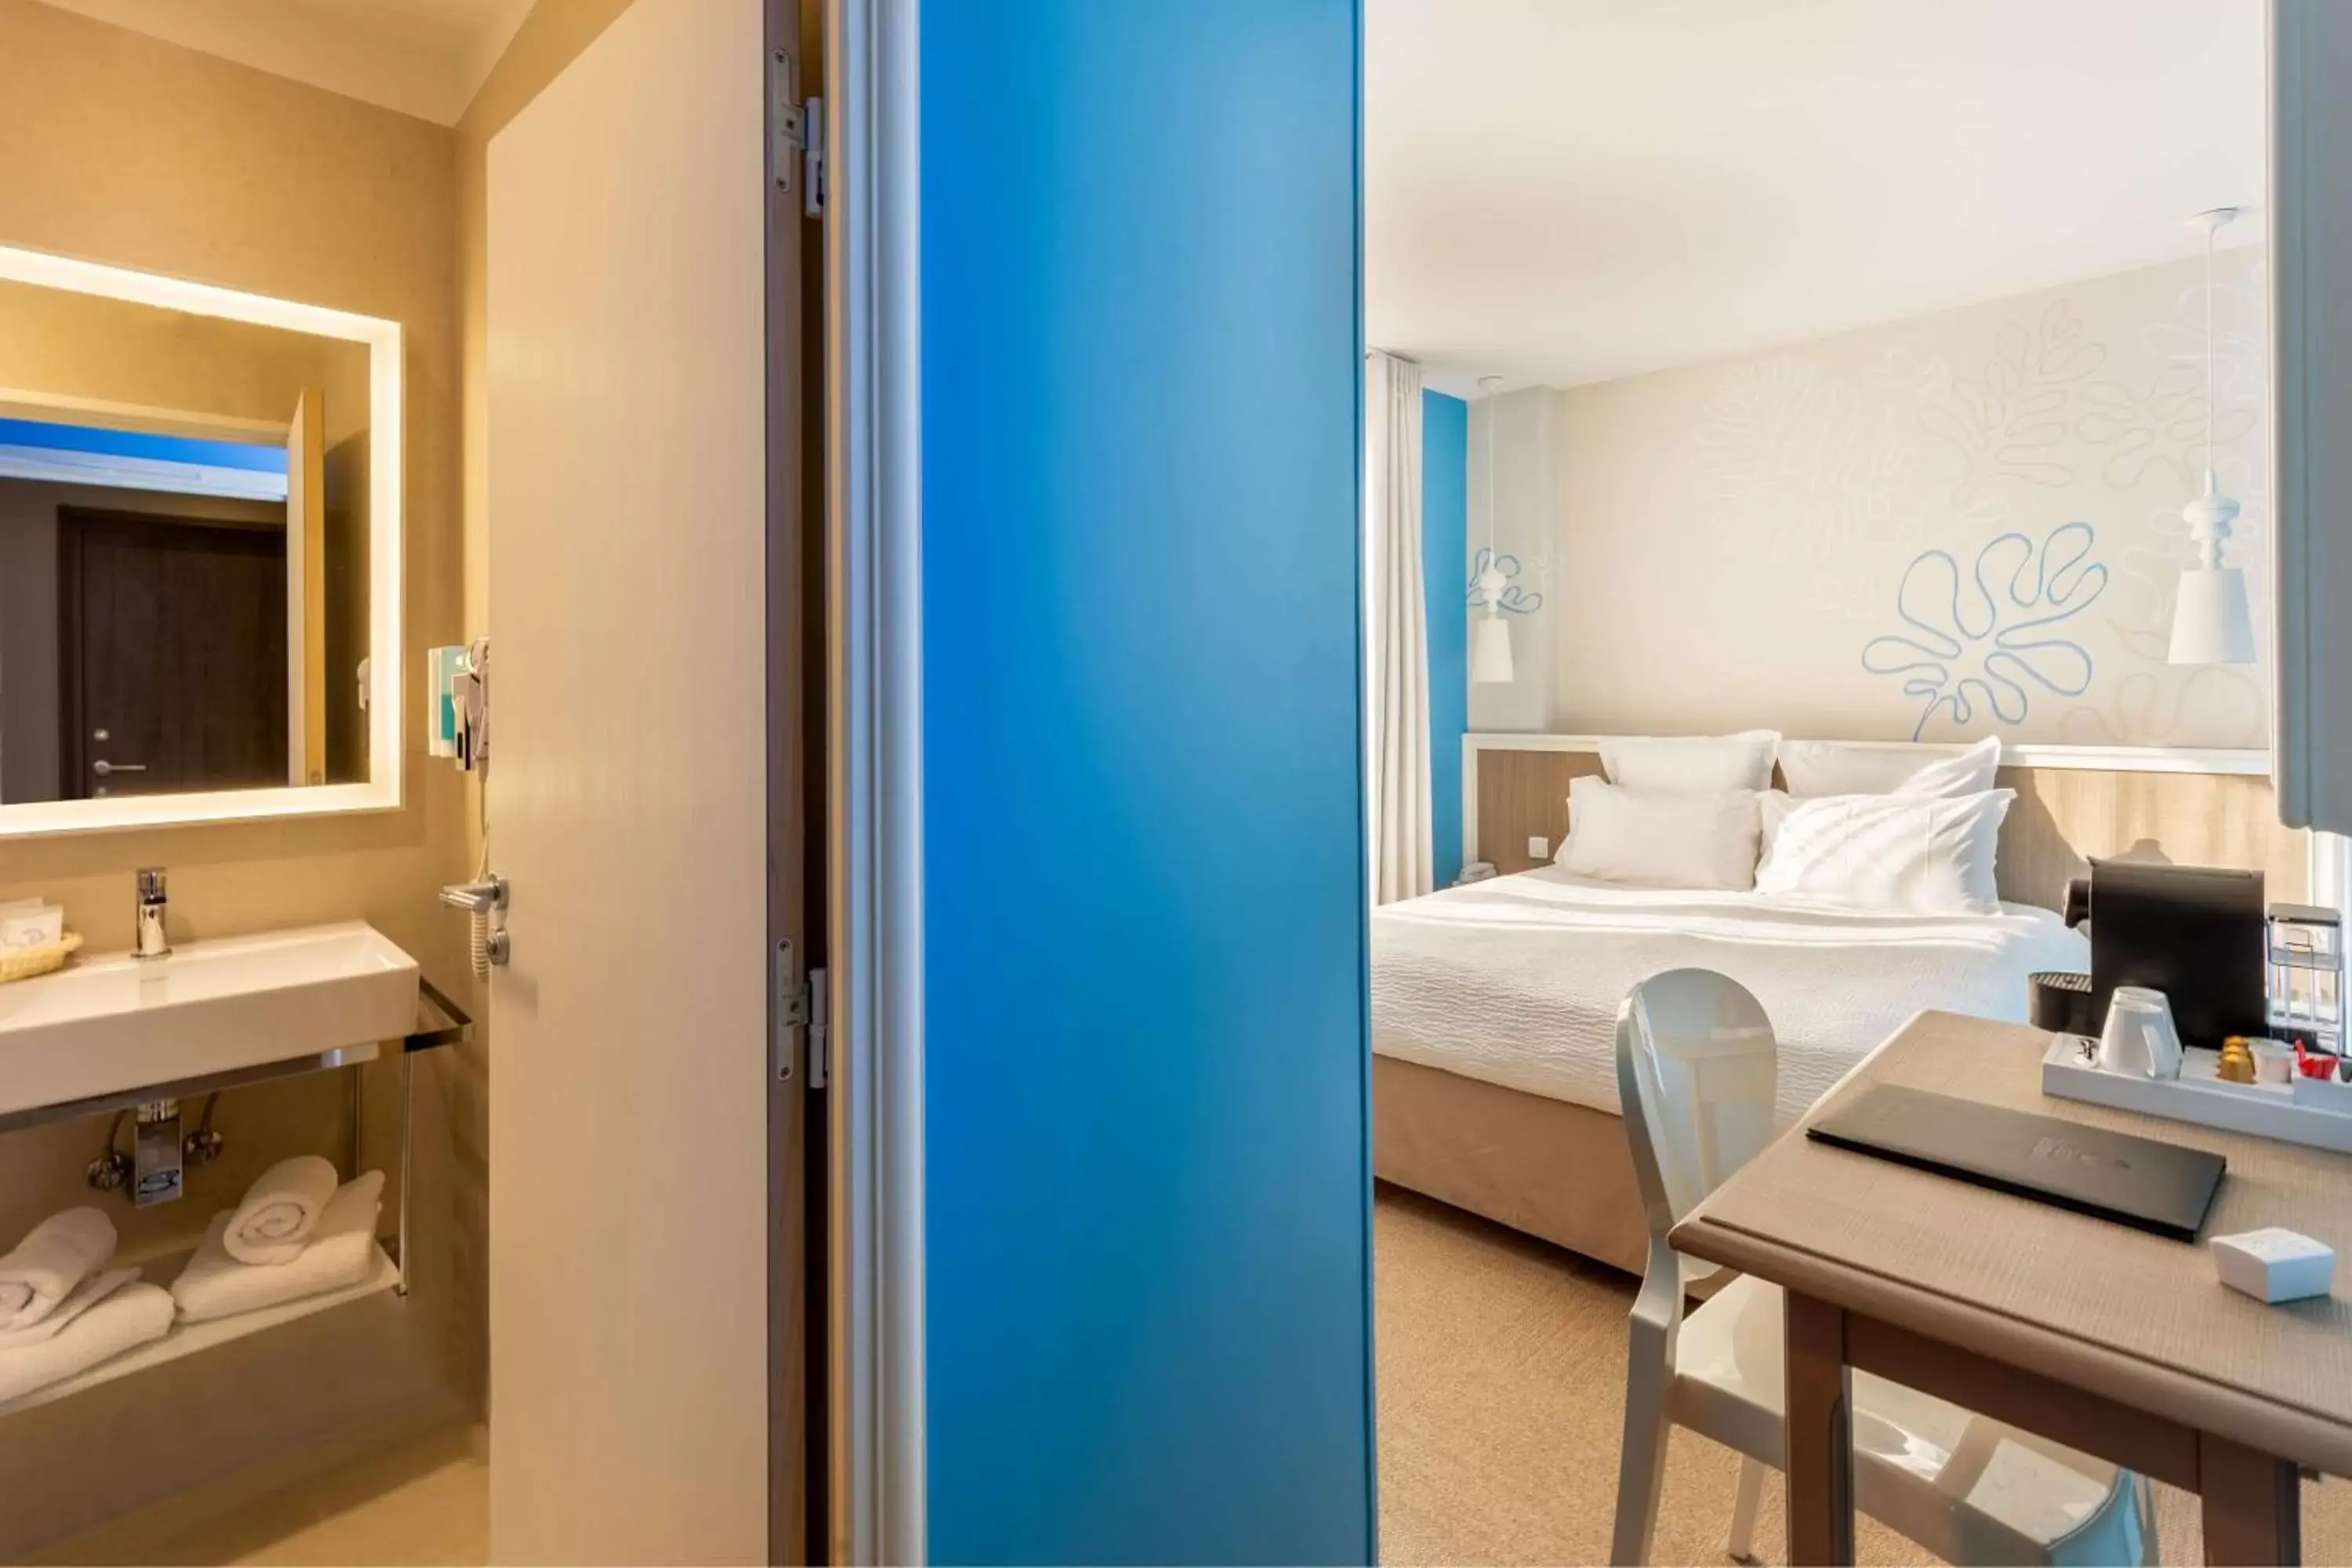 Bedroom, Bathroom in Best Western Hotel Matisse